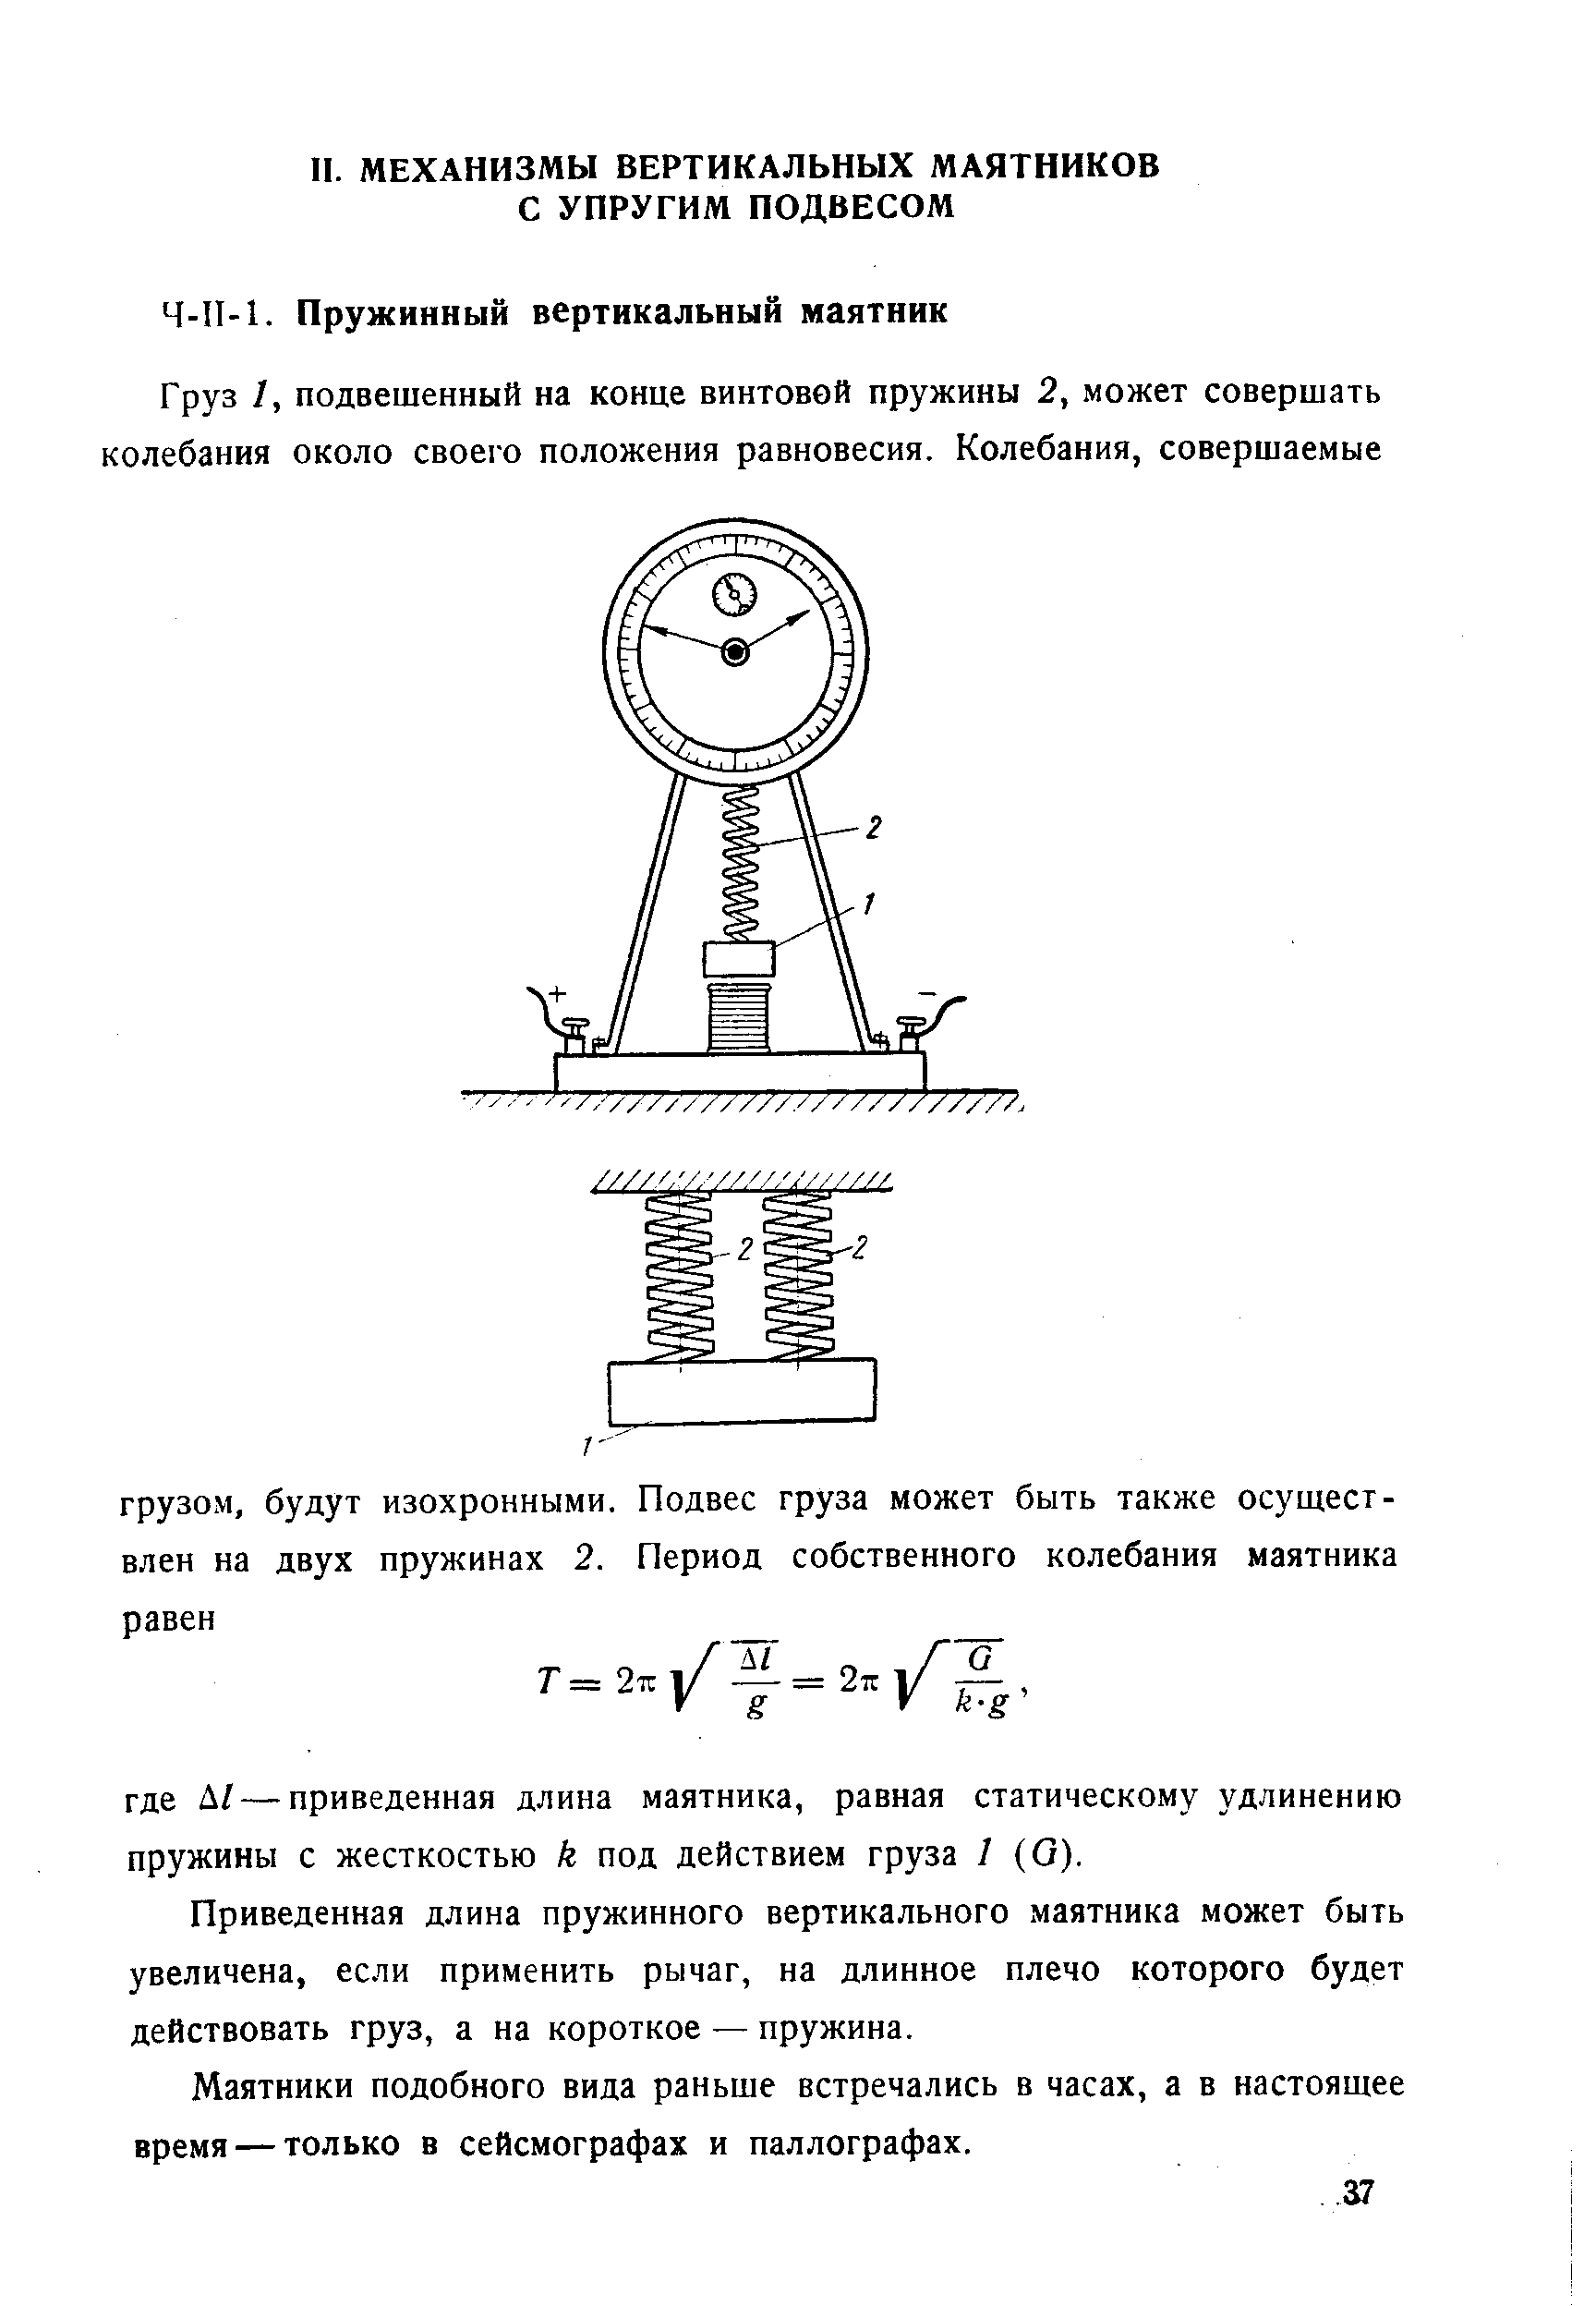 Приведенная длина пружинного вертикального маятника может быть увеличена, если применить рычаг, на длинное плечо которого будет действовать груз, а на короткое — пружина.
